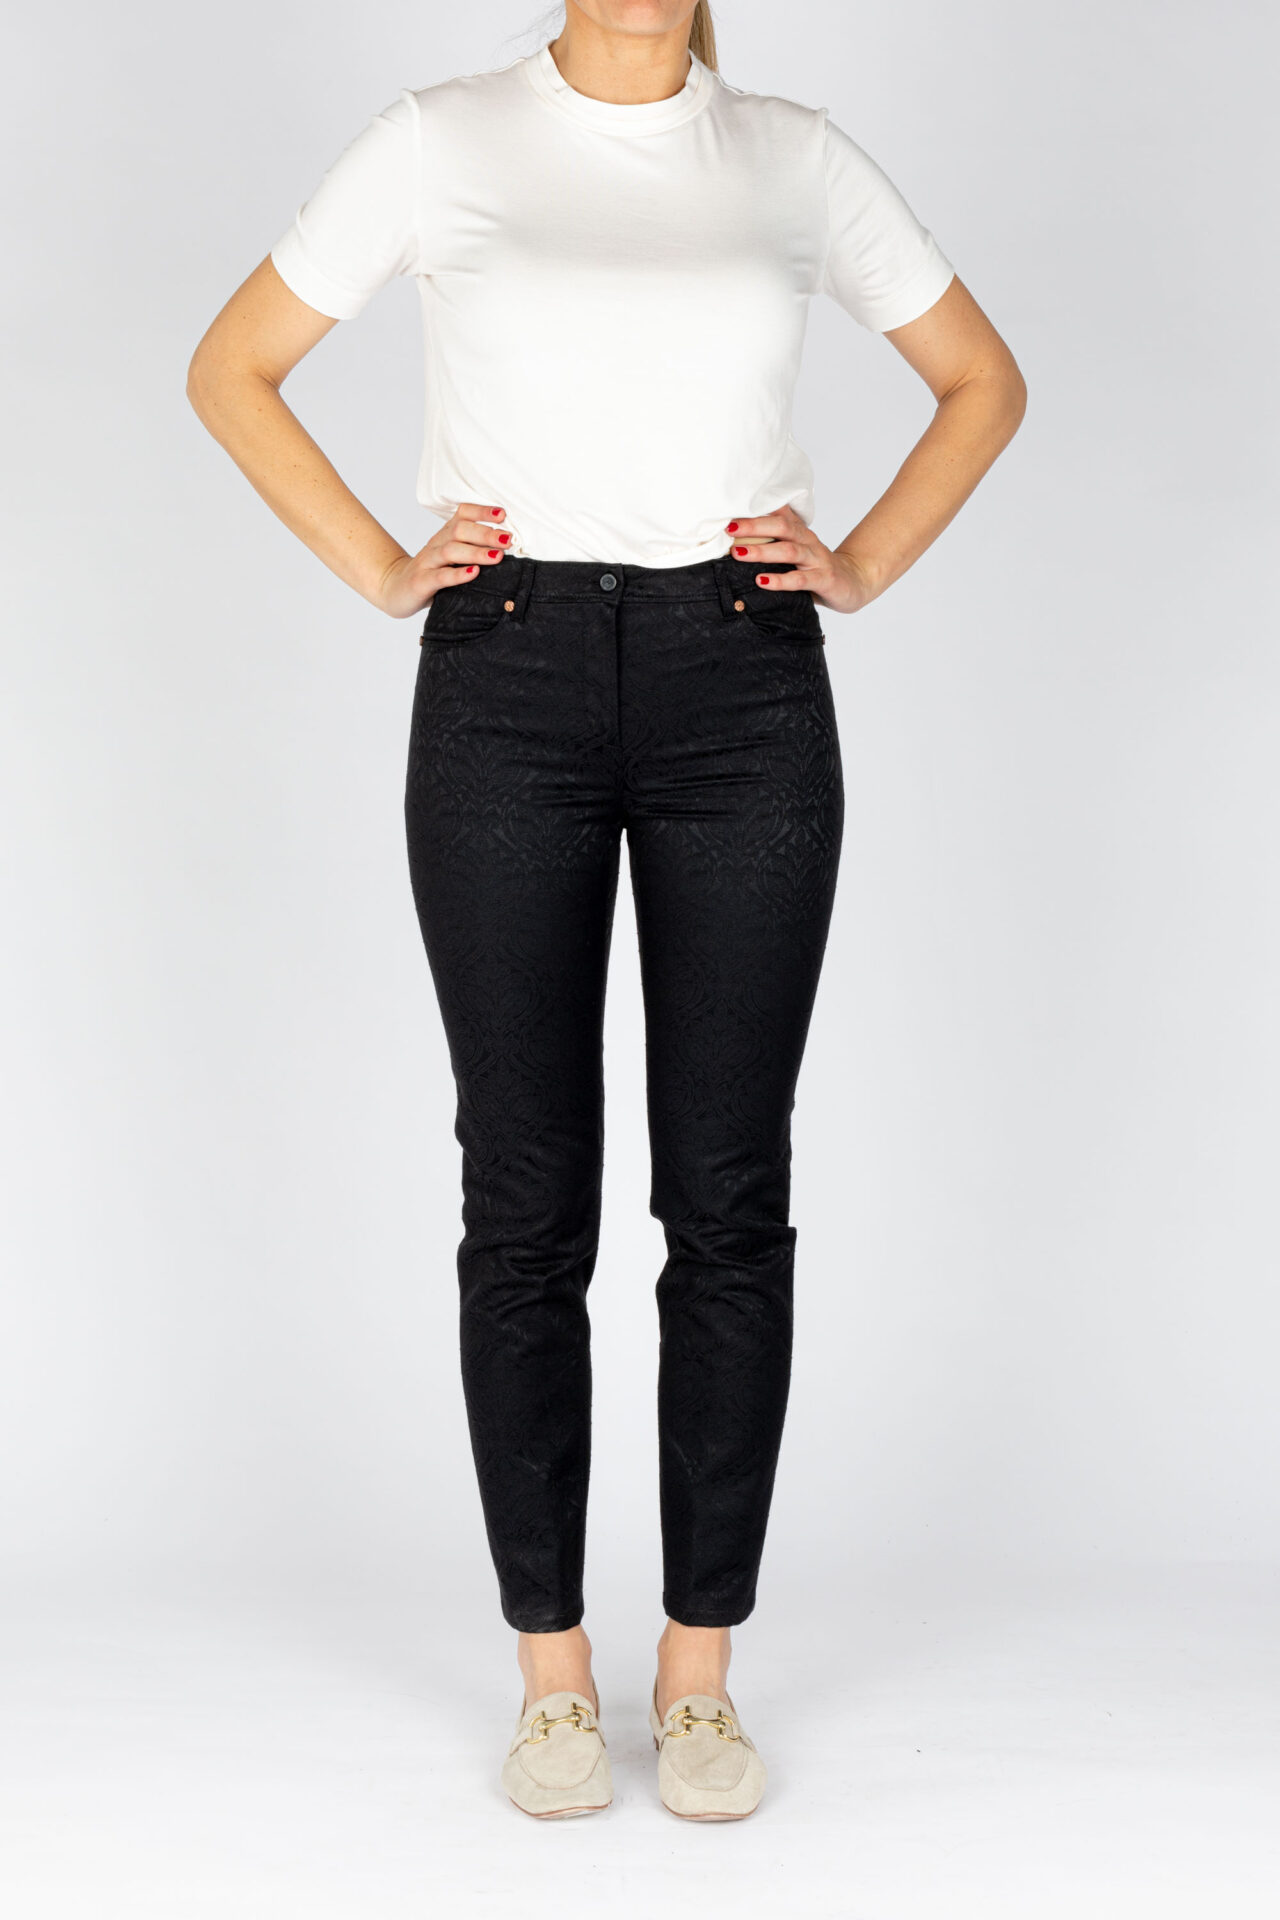 Pantaloni disegno fiore colore nero, linea Jeans tessuto jacquard